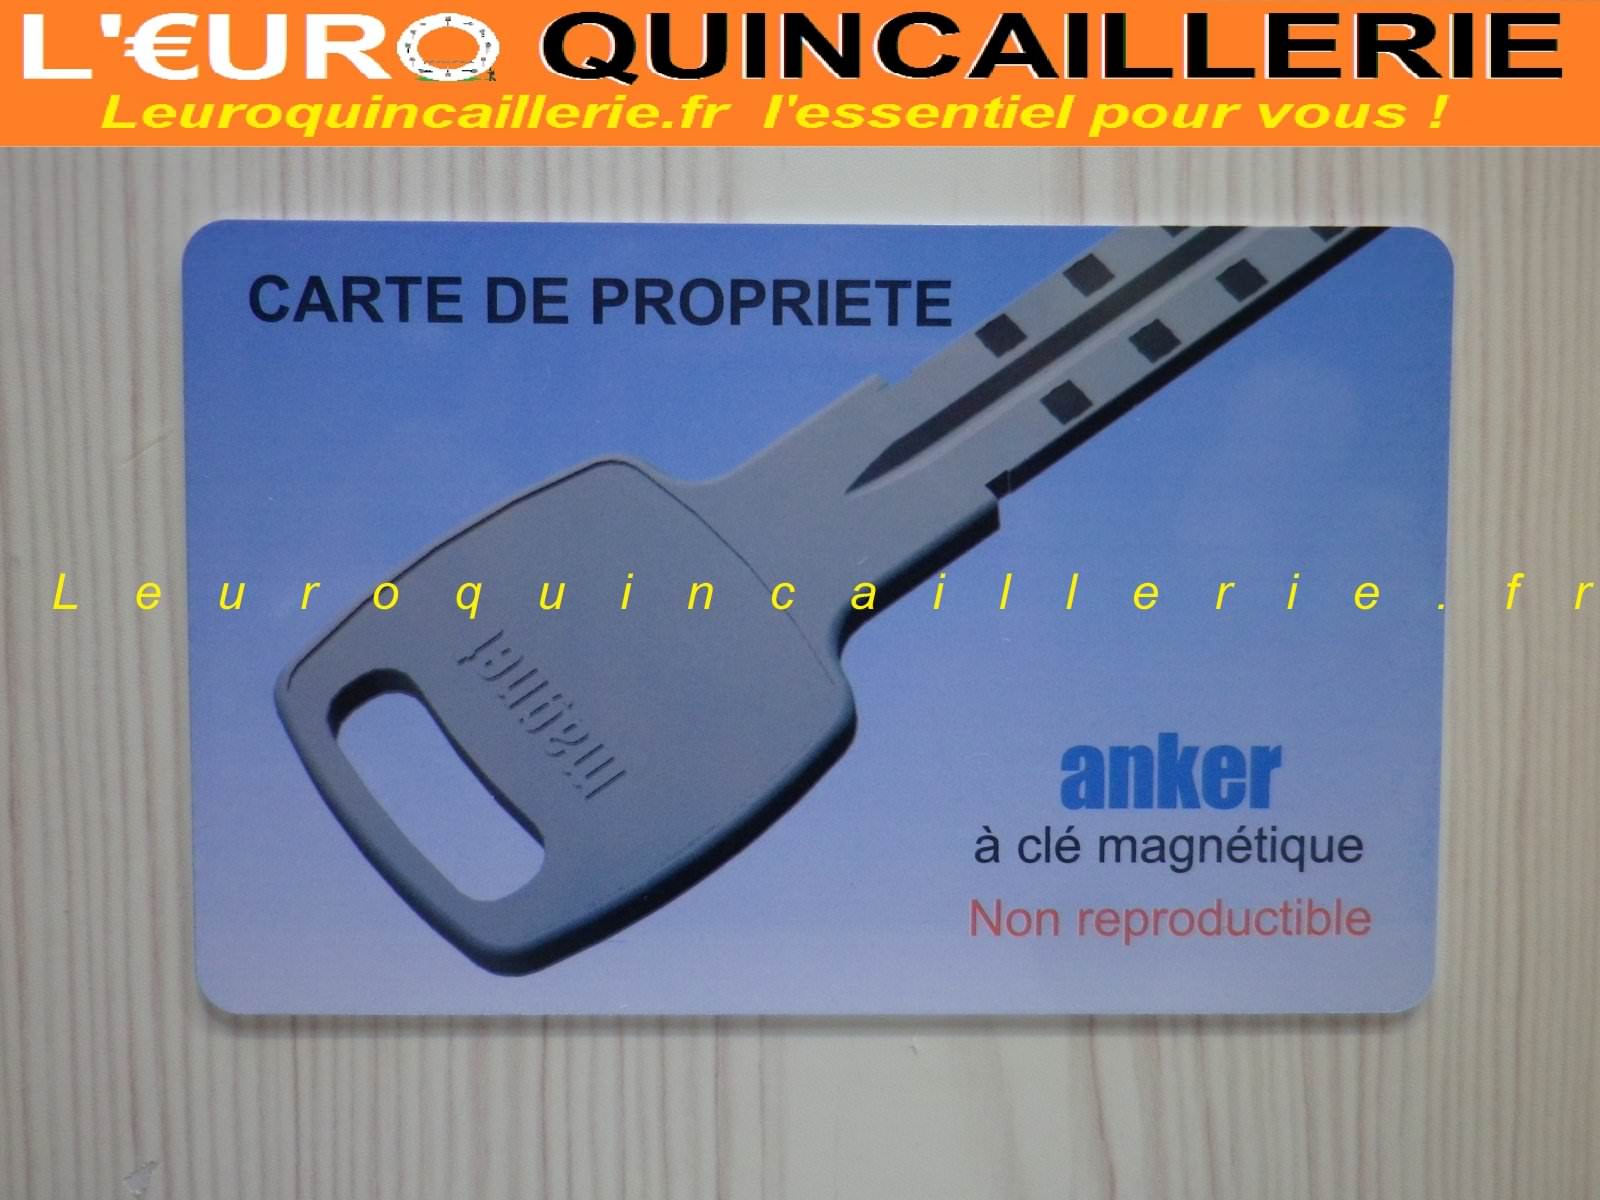 CARTE DE PROPRIETE ANKER LEUROQUINCAILLERIE.FR R